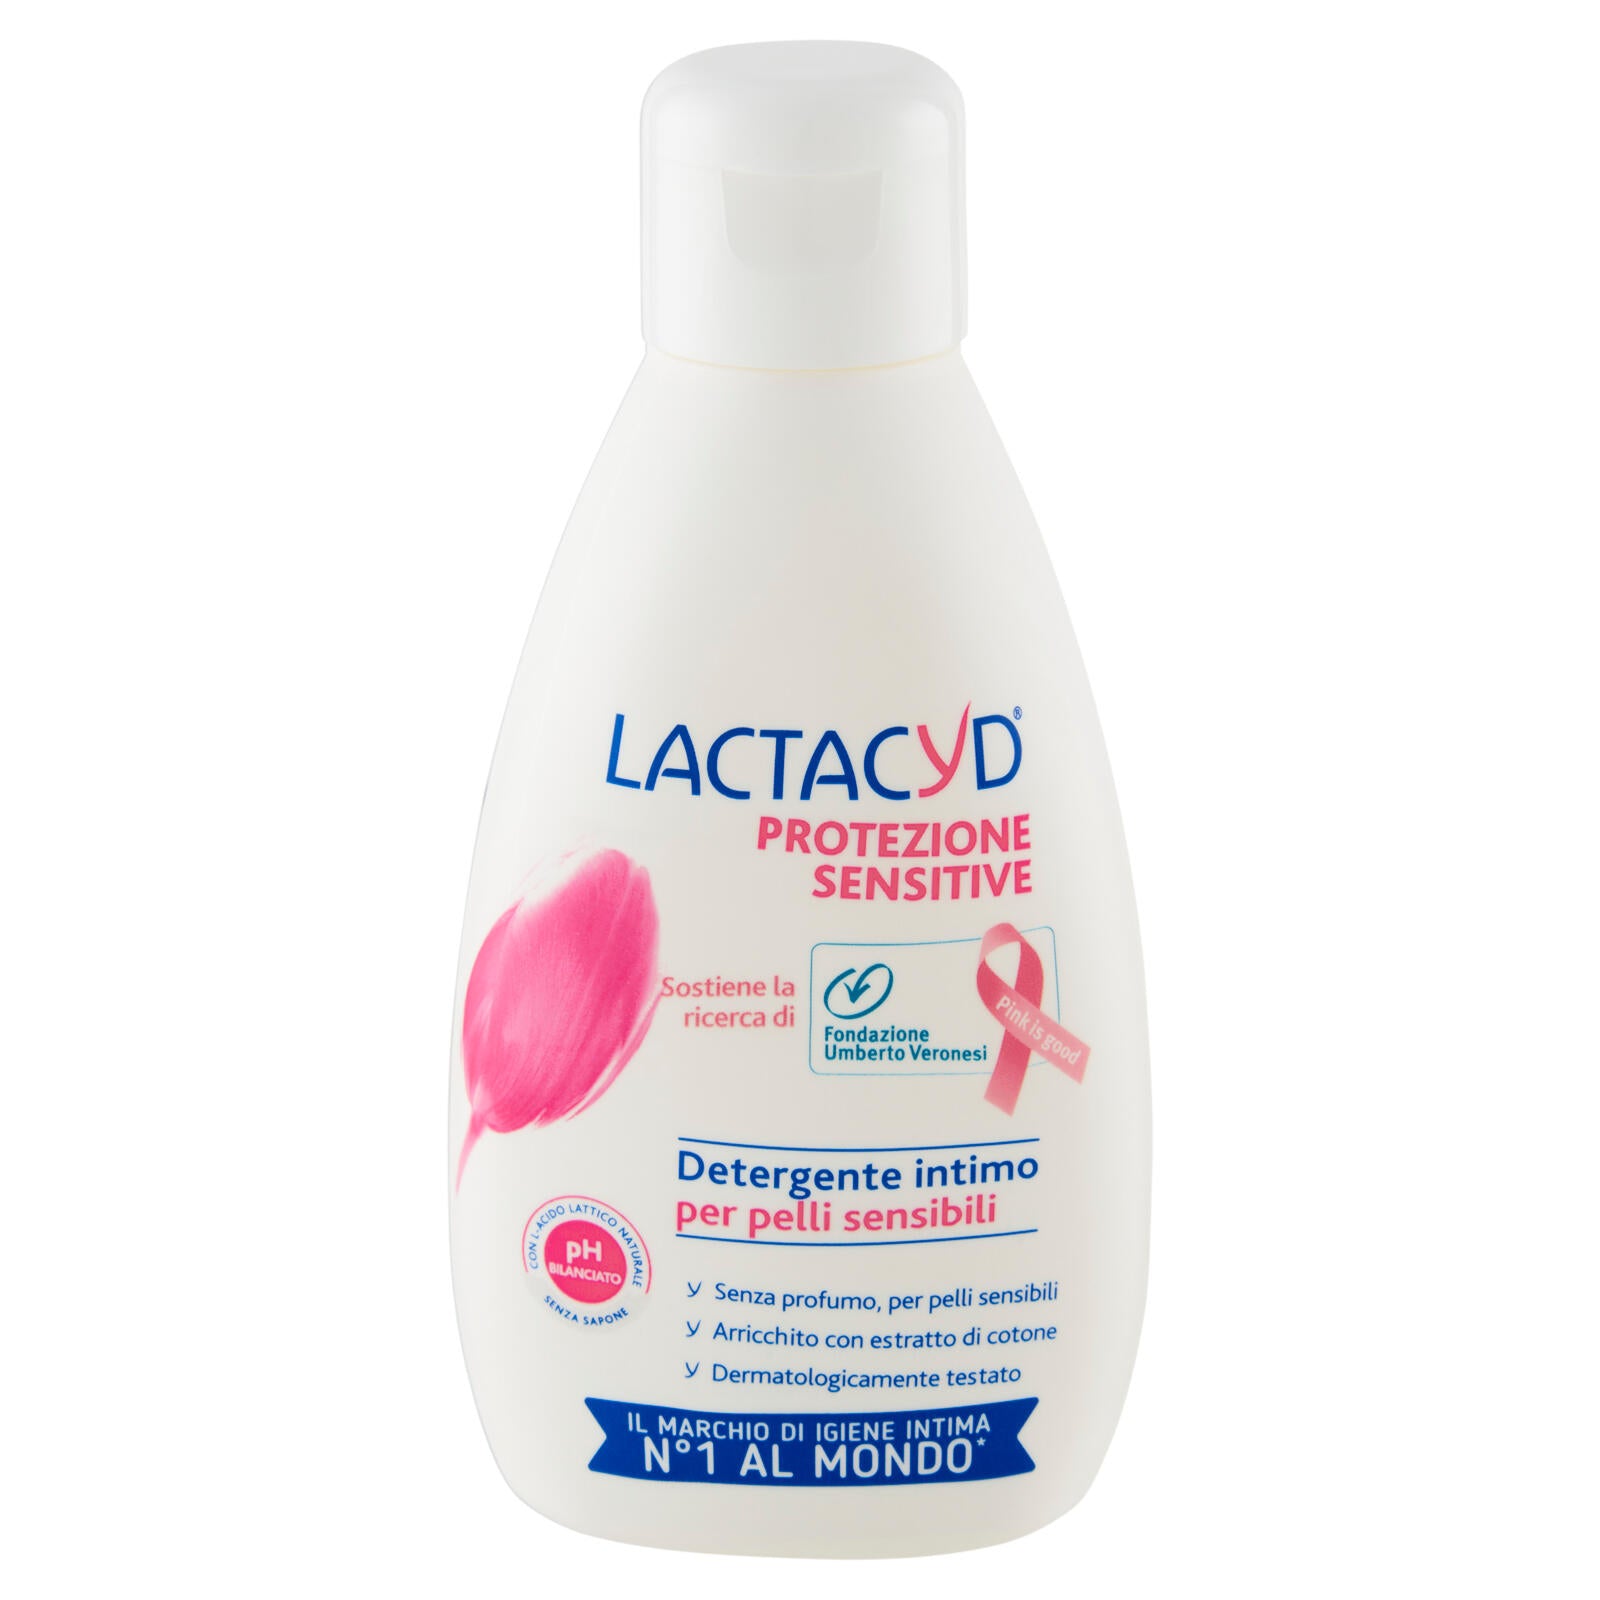 Lactacyd Protezione Sensitive Detergente intimo per pelli sensibili 200 ml